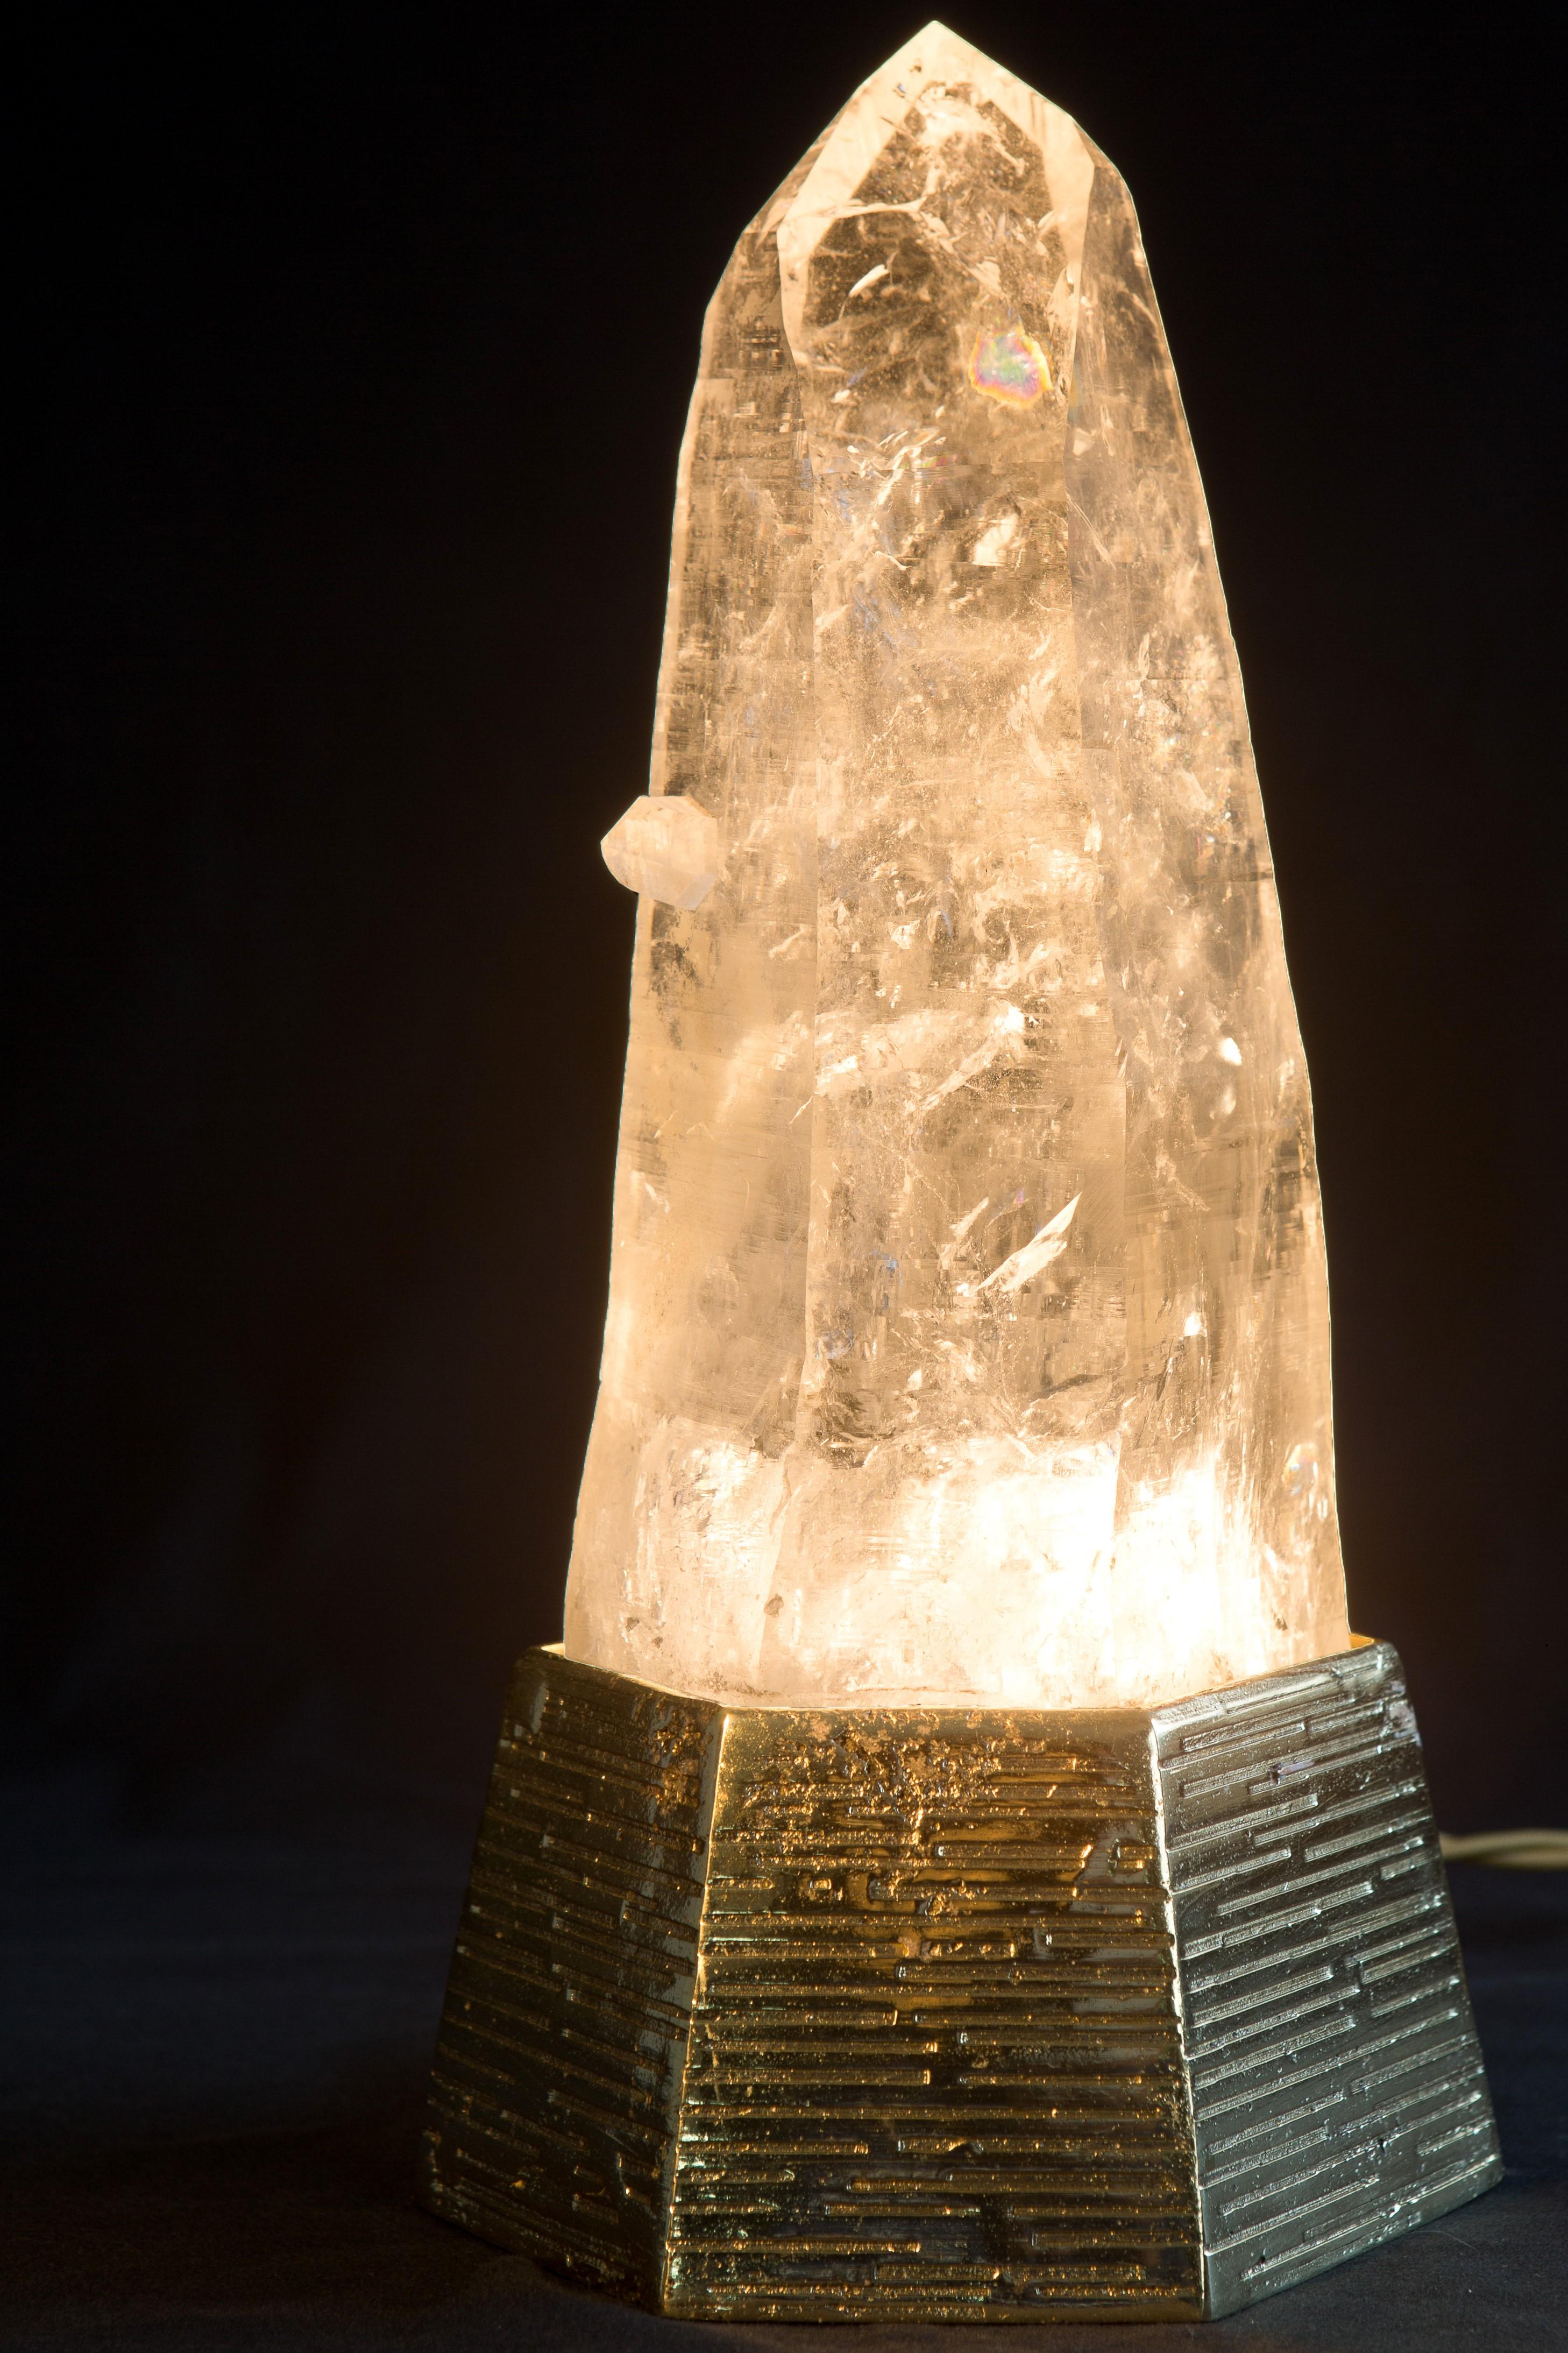 Lampe de table Ele en quartz naturel de Demian Quincke
Dimensions : diamètre 13 x hauteur 33 cm
MATERIAL : Base en bronze coulé et pointe en quartz naturel extra avec bourgeon.

5W, GU-10 Led light inside, Bi-Volt 110/220 V
4,1 kg de pointe en